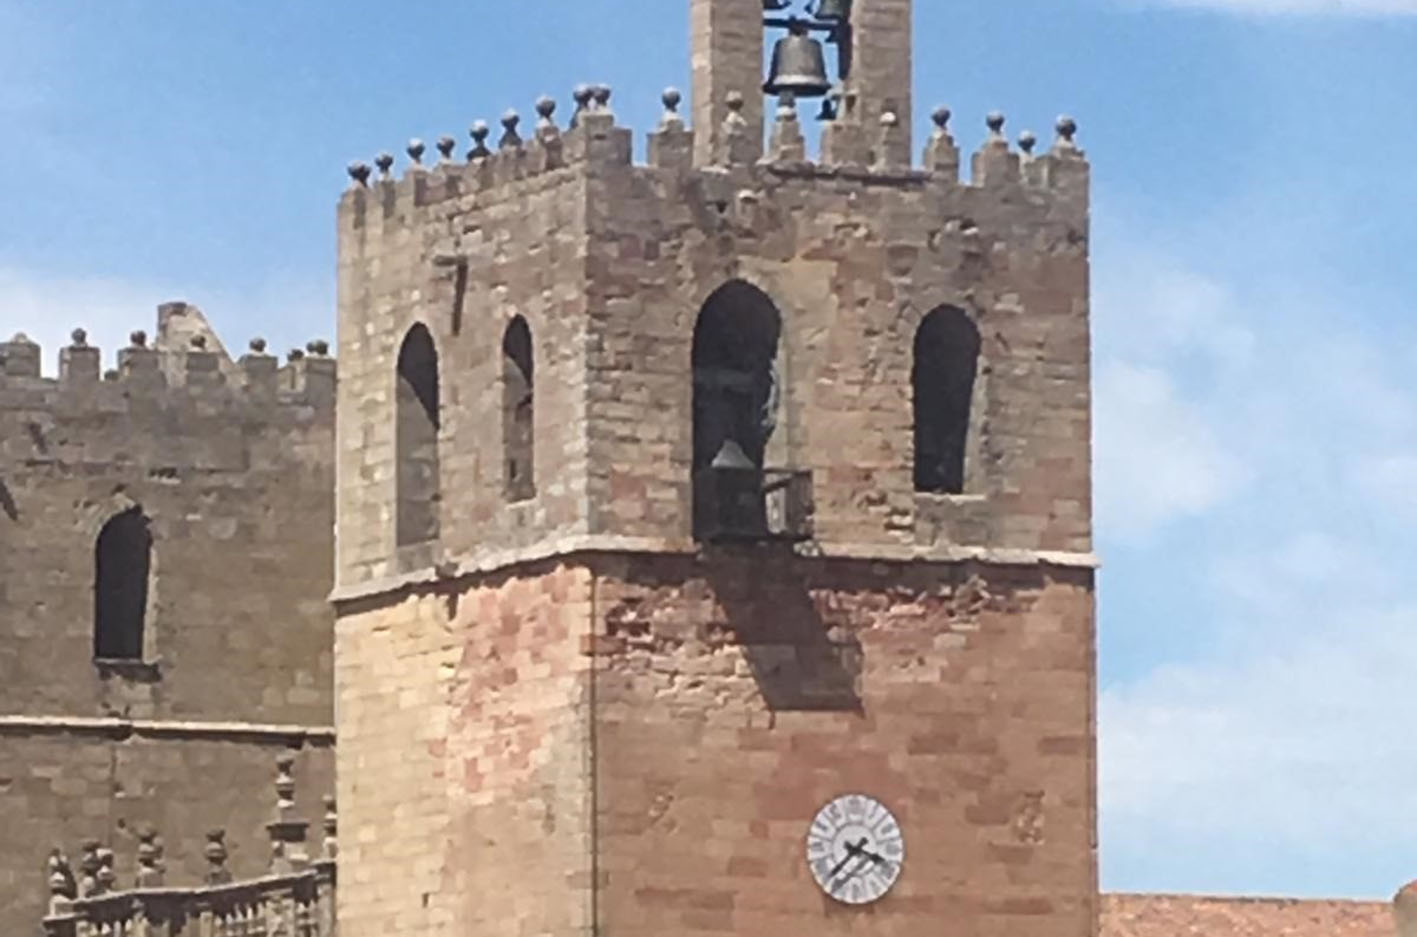 Los cuartos del reloj de la catedral de Sigüenza suenan diferente. Os contamos por qué.